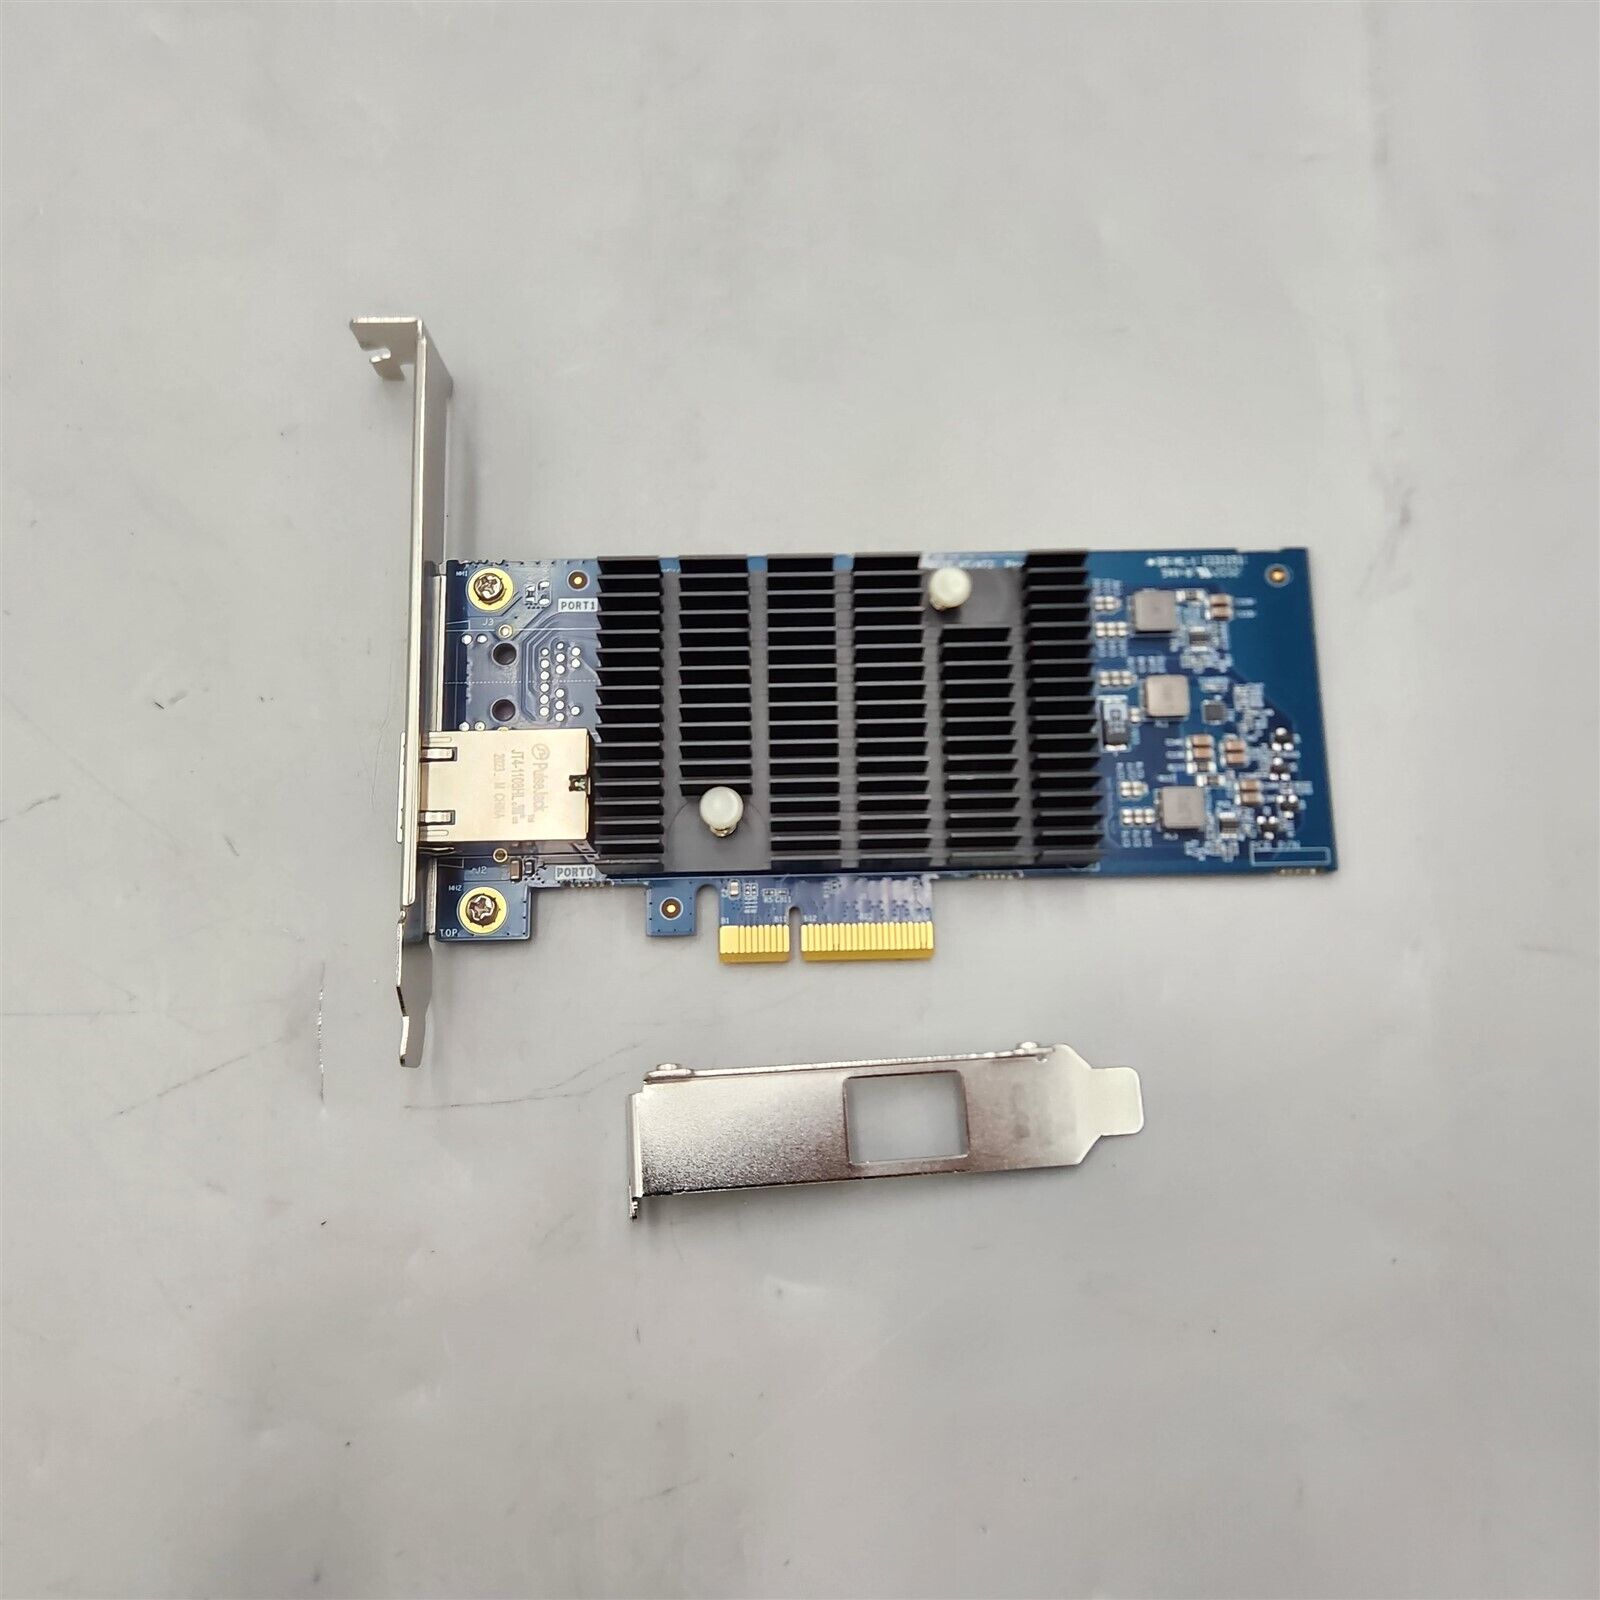 10Gb PCI-E NIC Network Card Single Copper RJ45 Port w/ Intel X550-AT2 Controller